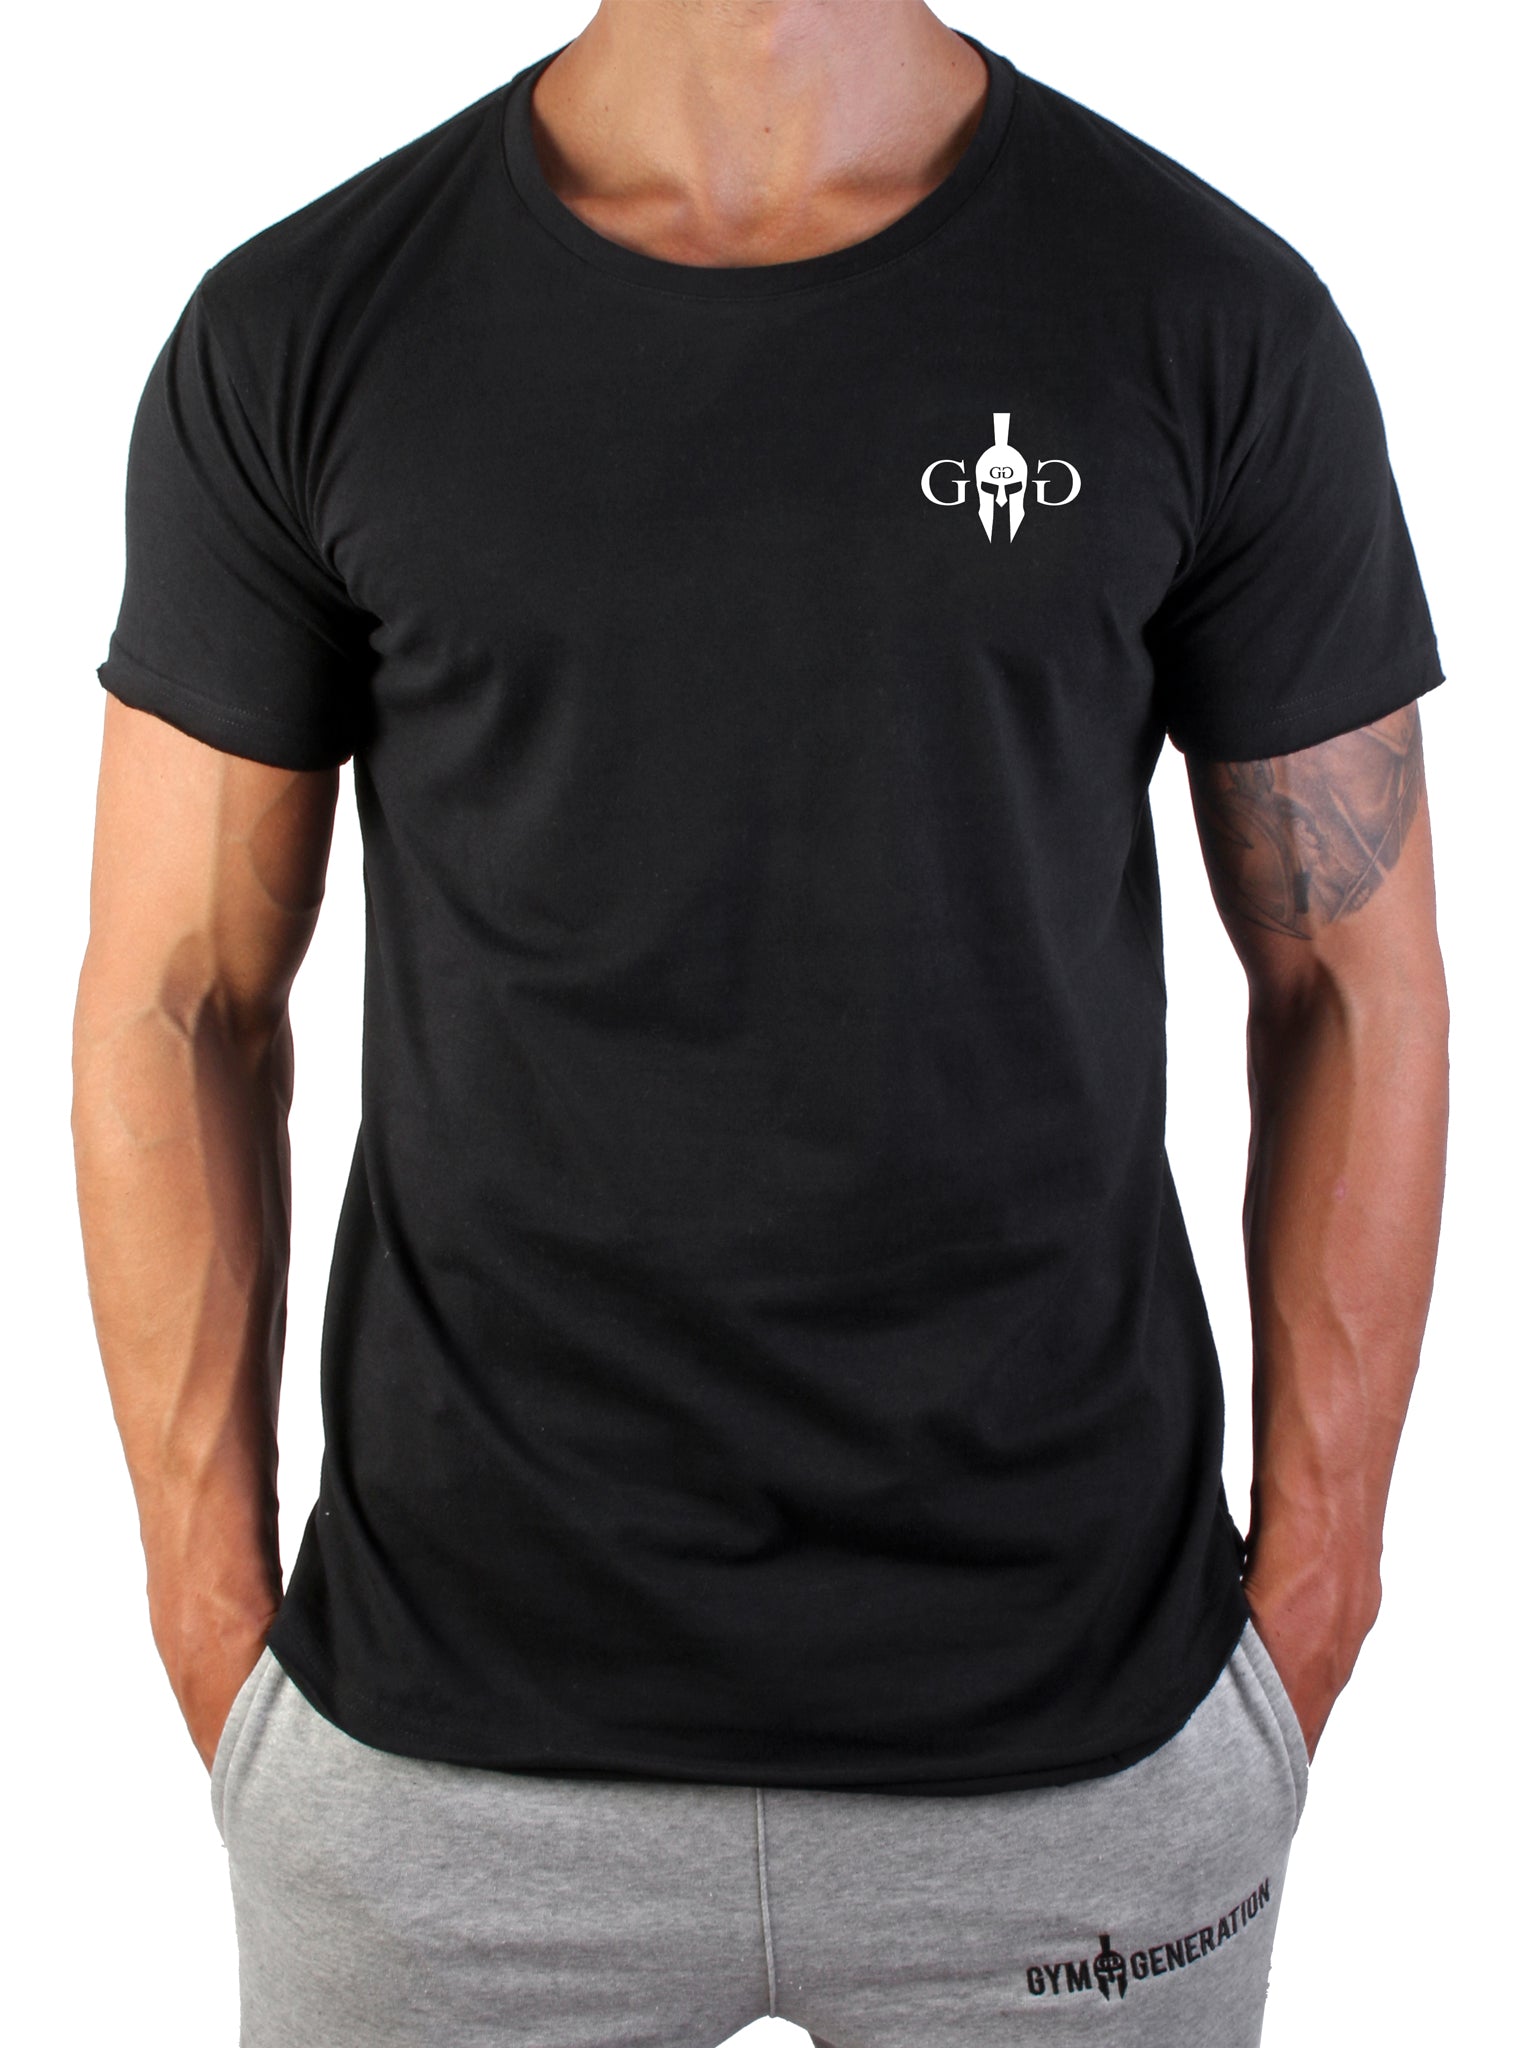 Hochwertiges schwarzes Gym T-Shirt mit edlem weißem Spartaner-Logo und epischem Rückendesign.